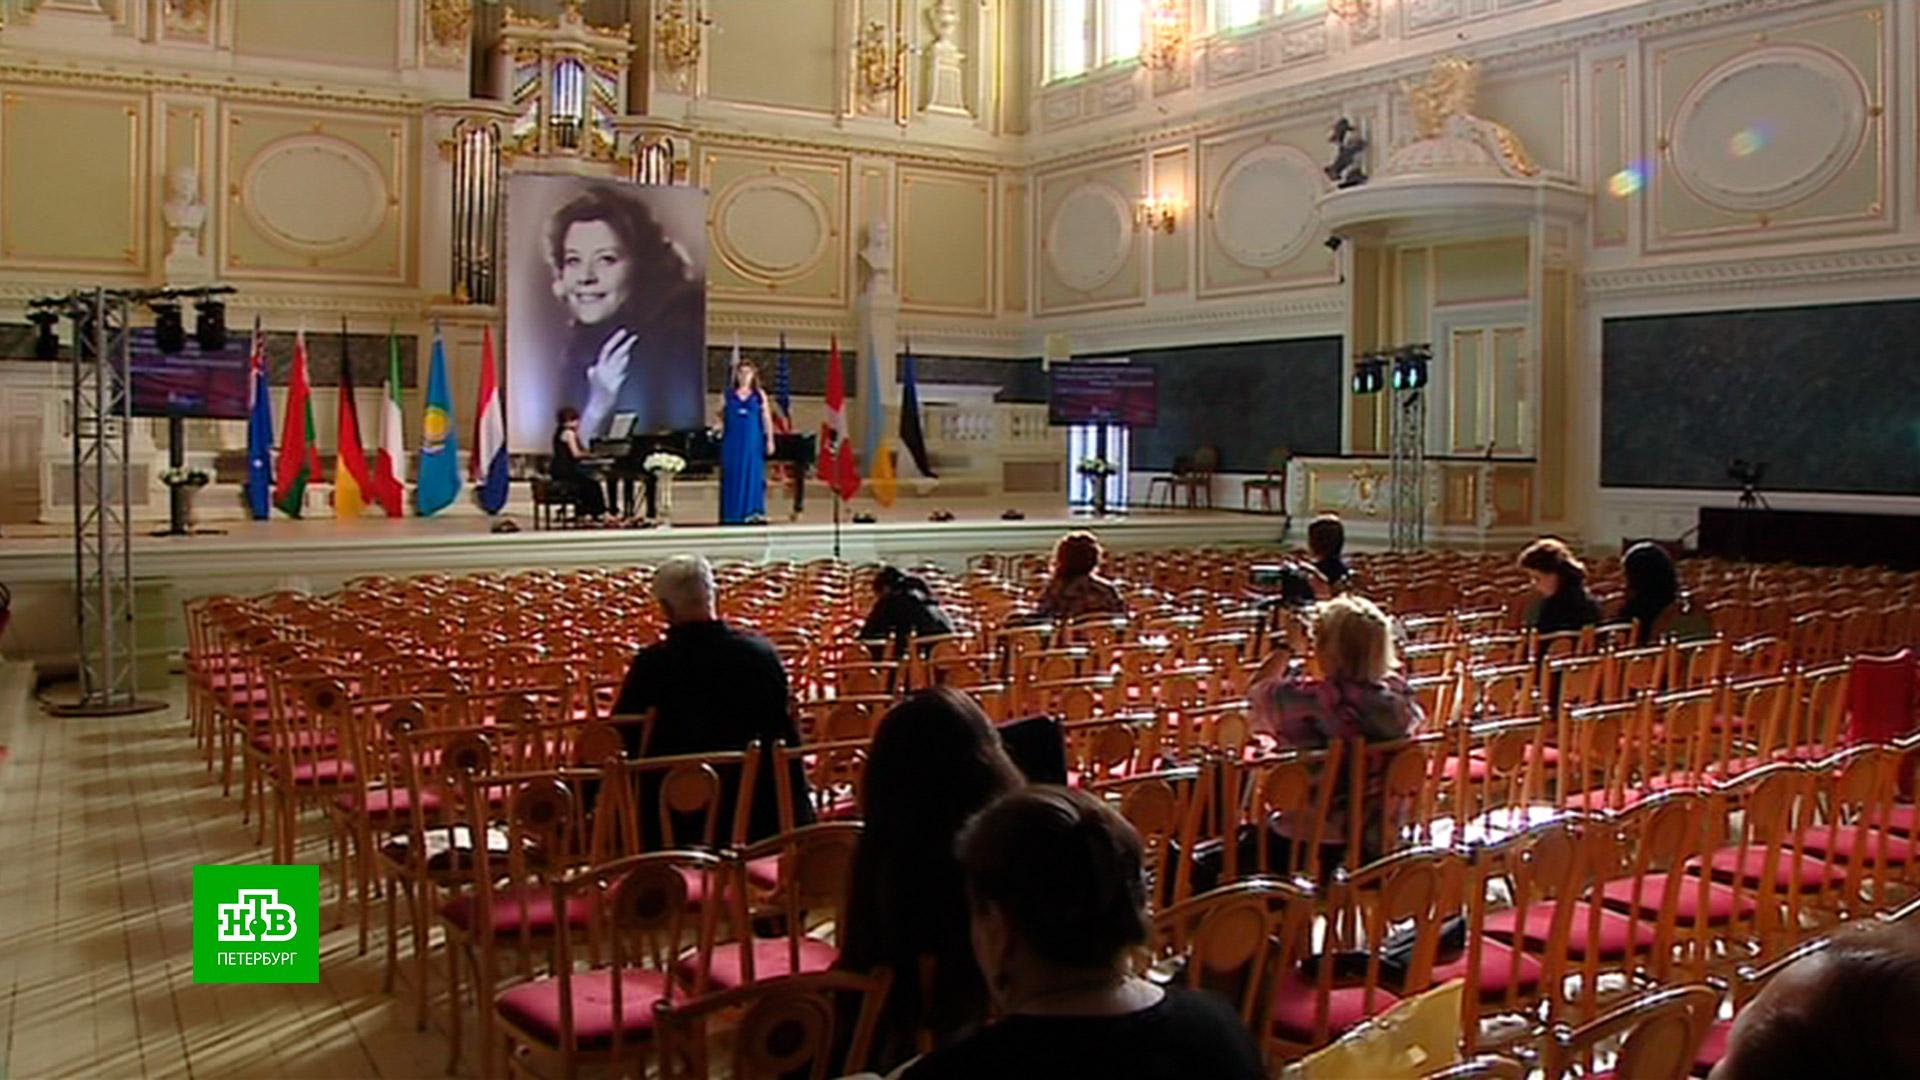 В Петербурге завершился ХIII Международный конкурс молодых оперных певцов Елены Образцовой